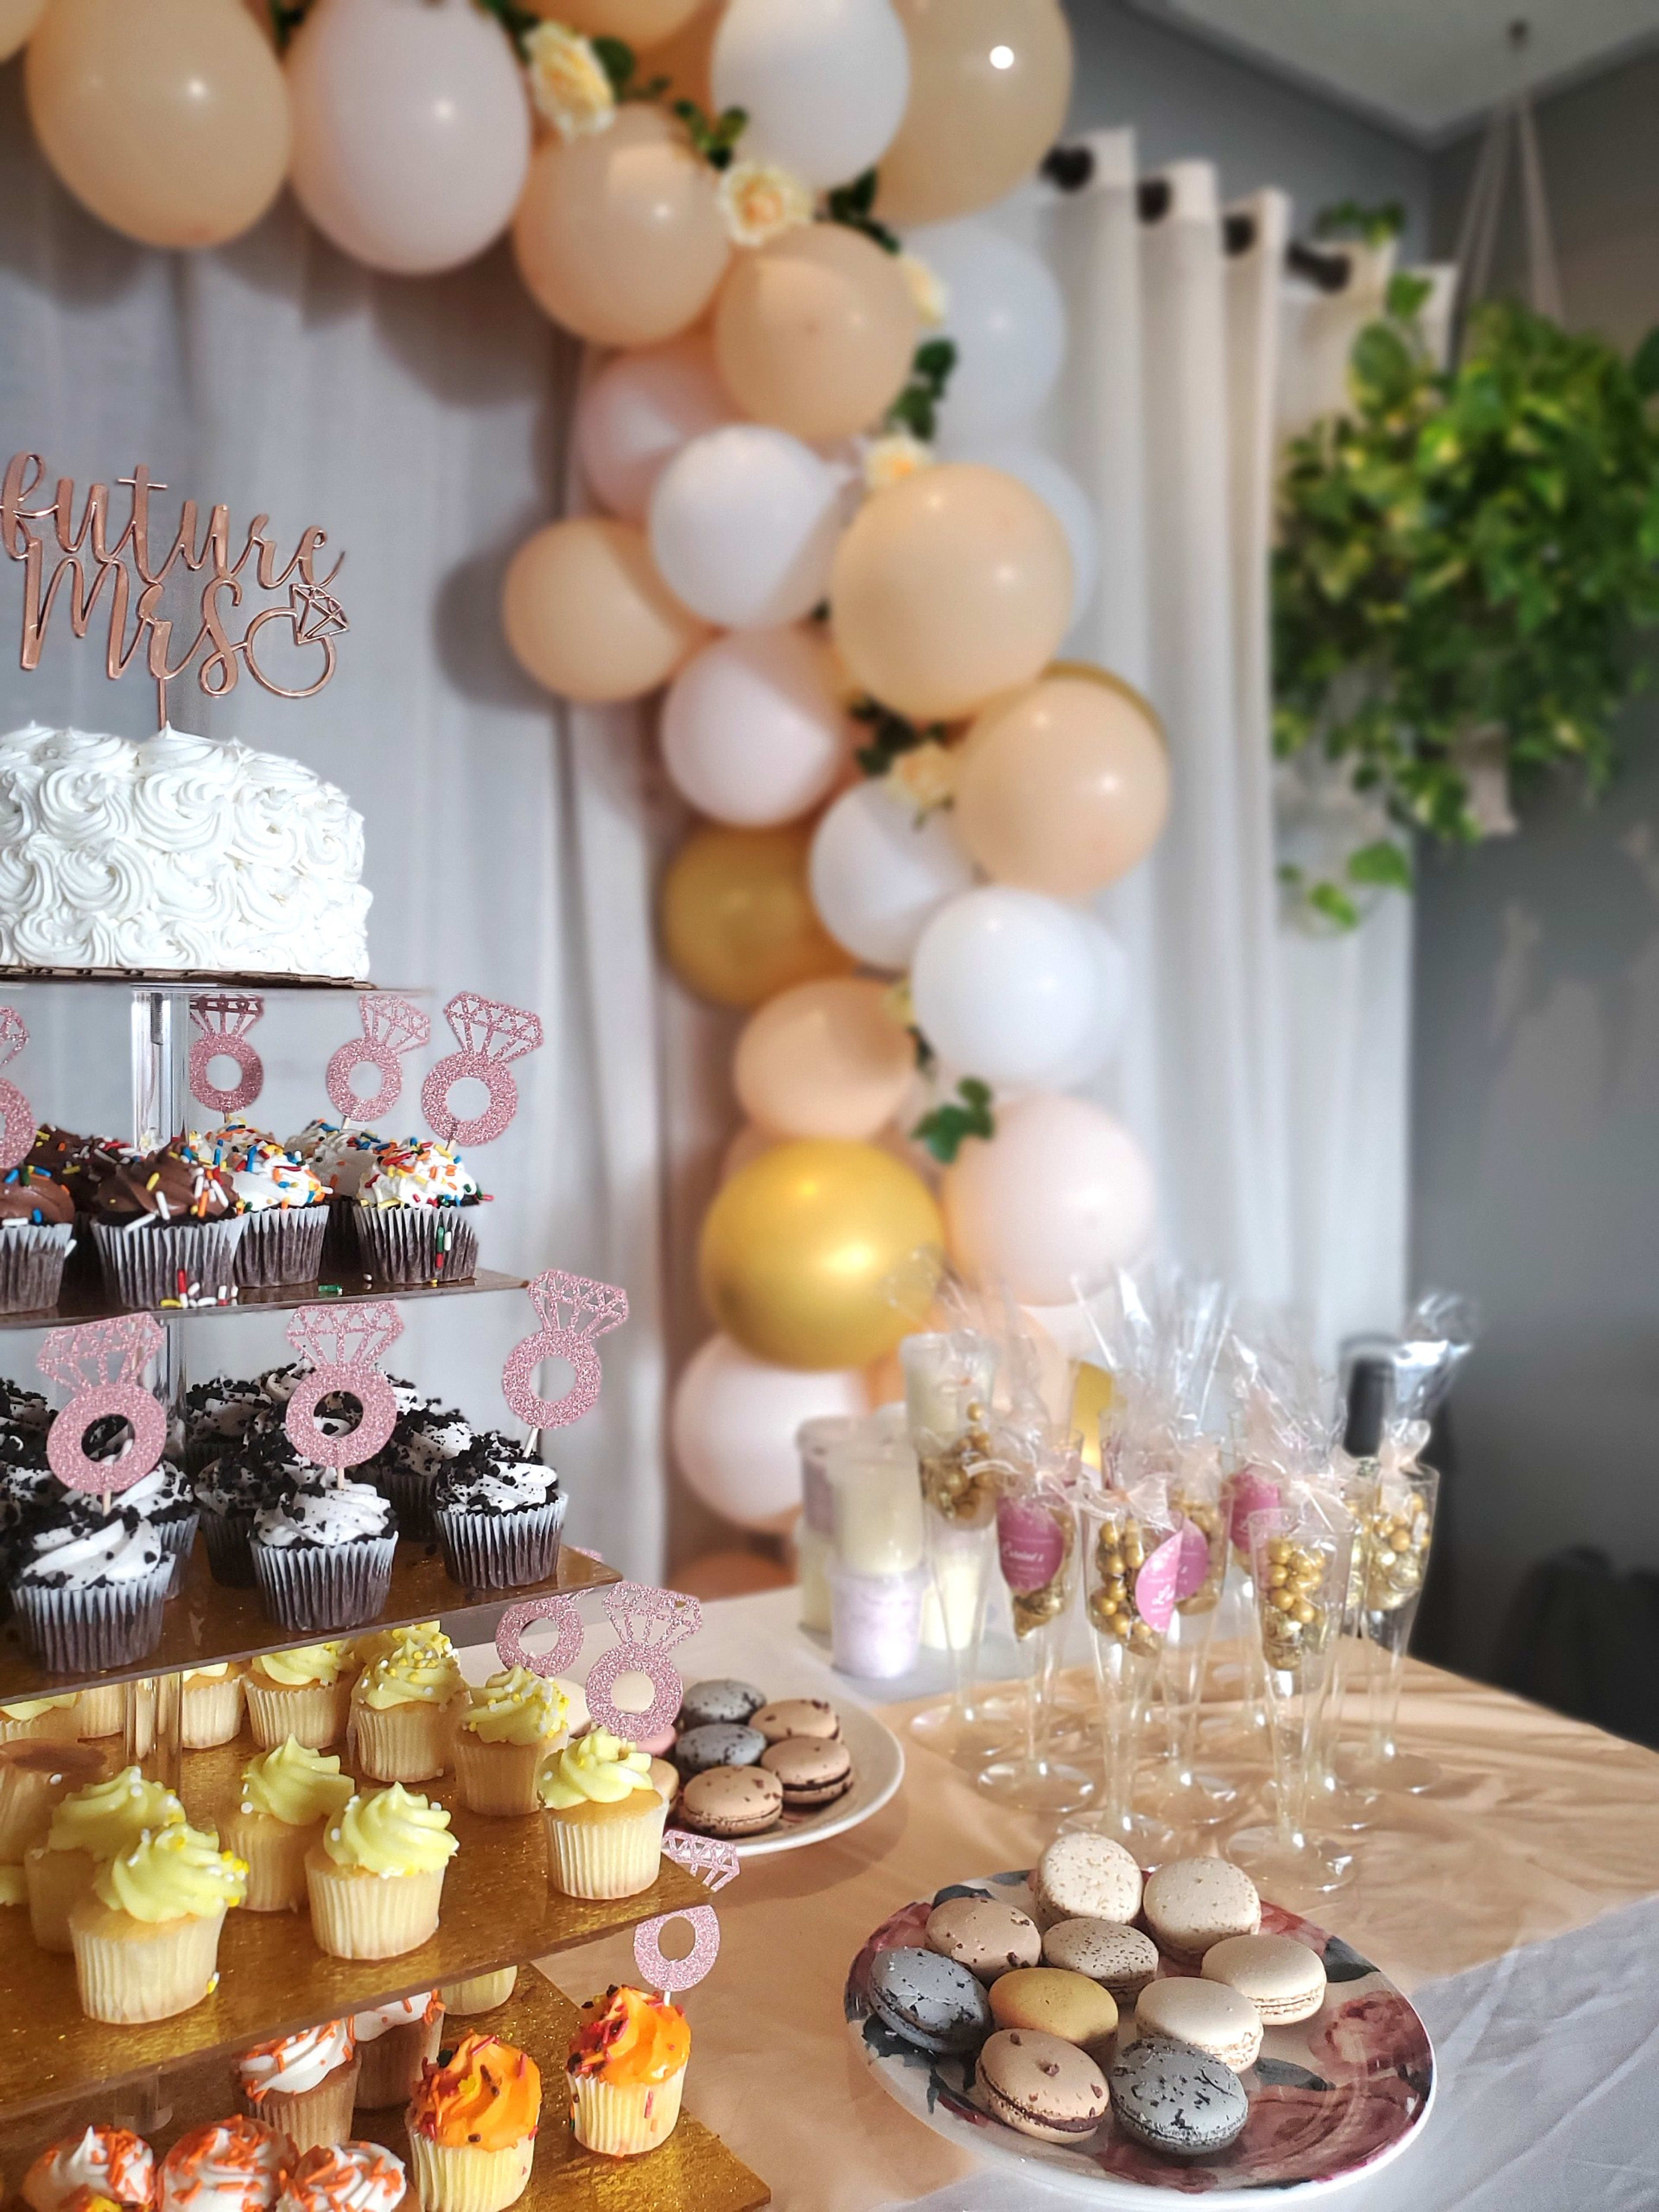 Une table de réception d'EVJF ornée de nombreux petits gâteaux colorés et d'en-cas.